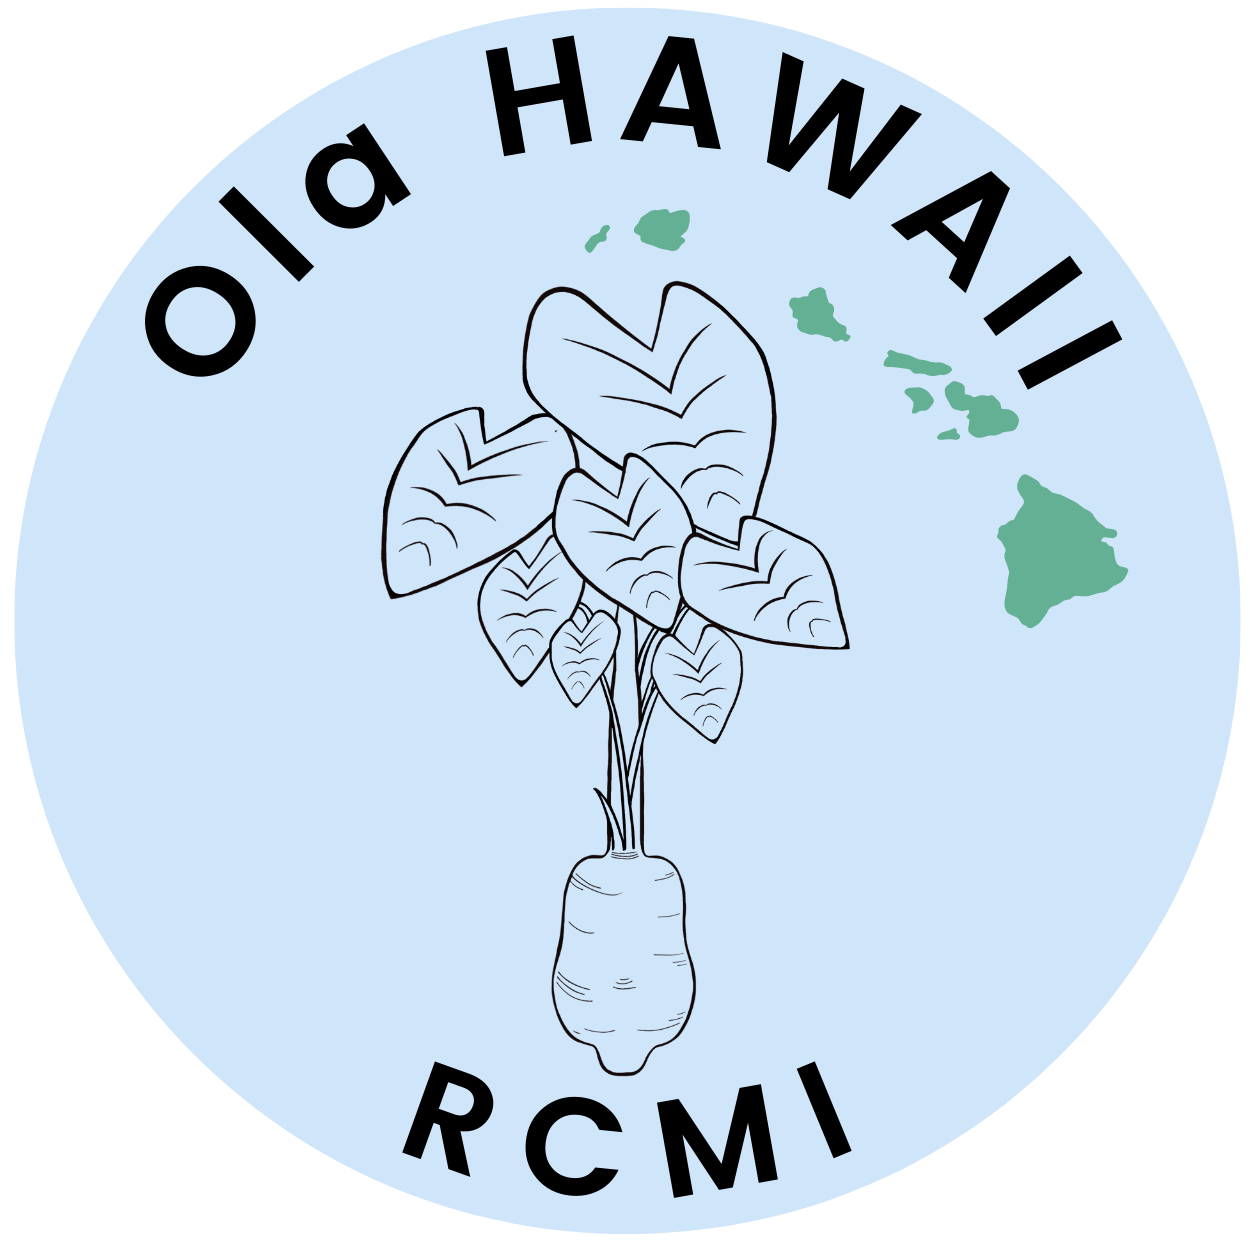 Ola Hawaii RCMI